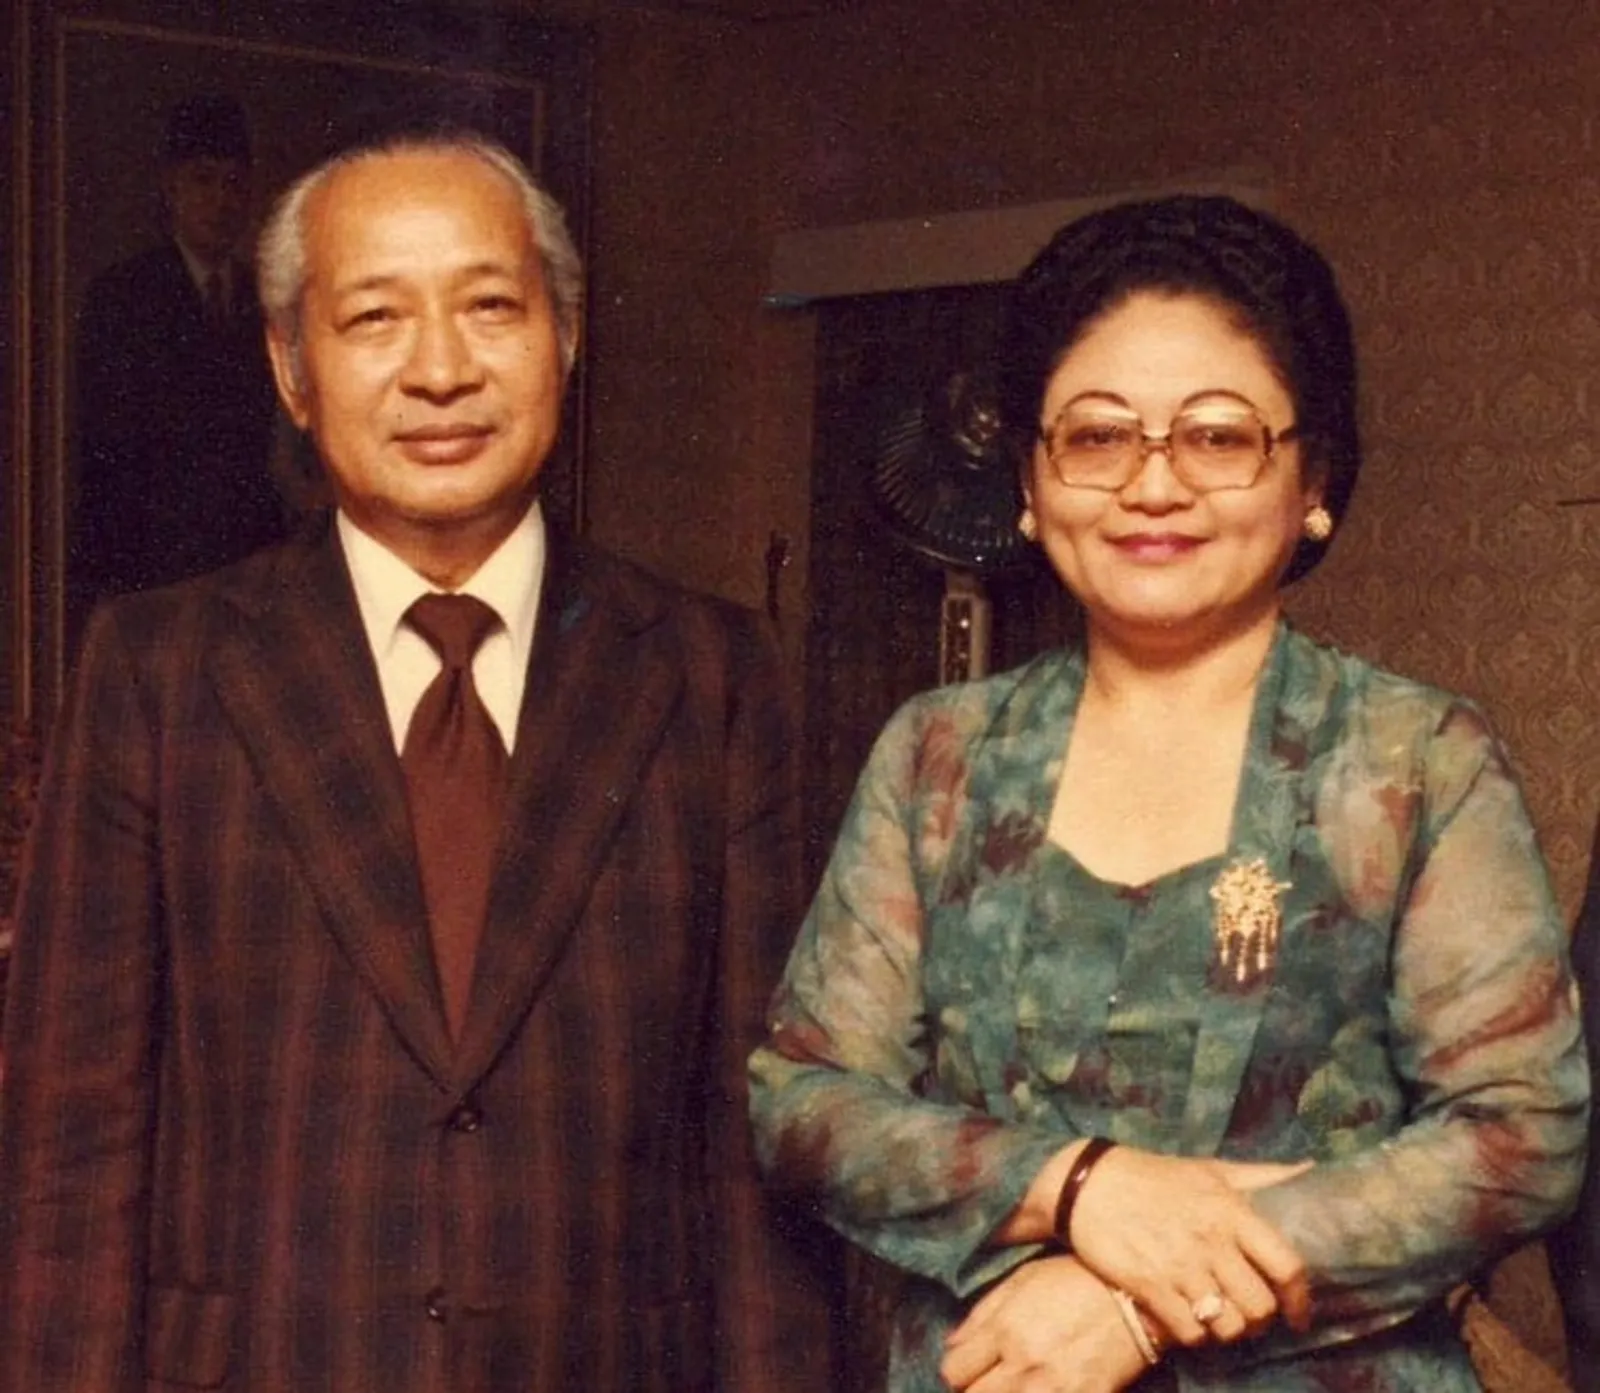 Dipisahkan Maut, Intip 13 Potret Lawas Soeharto dan Tien di Masa Lalu